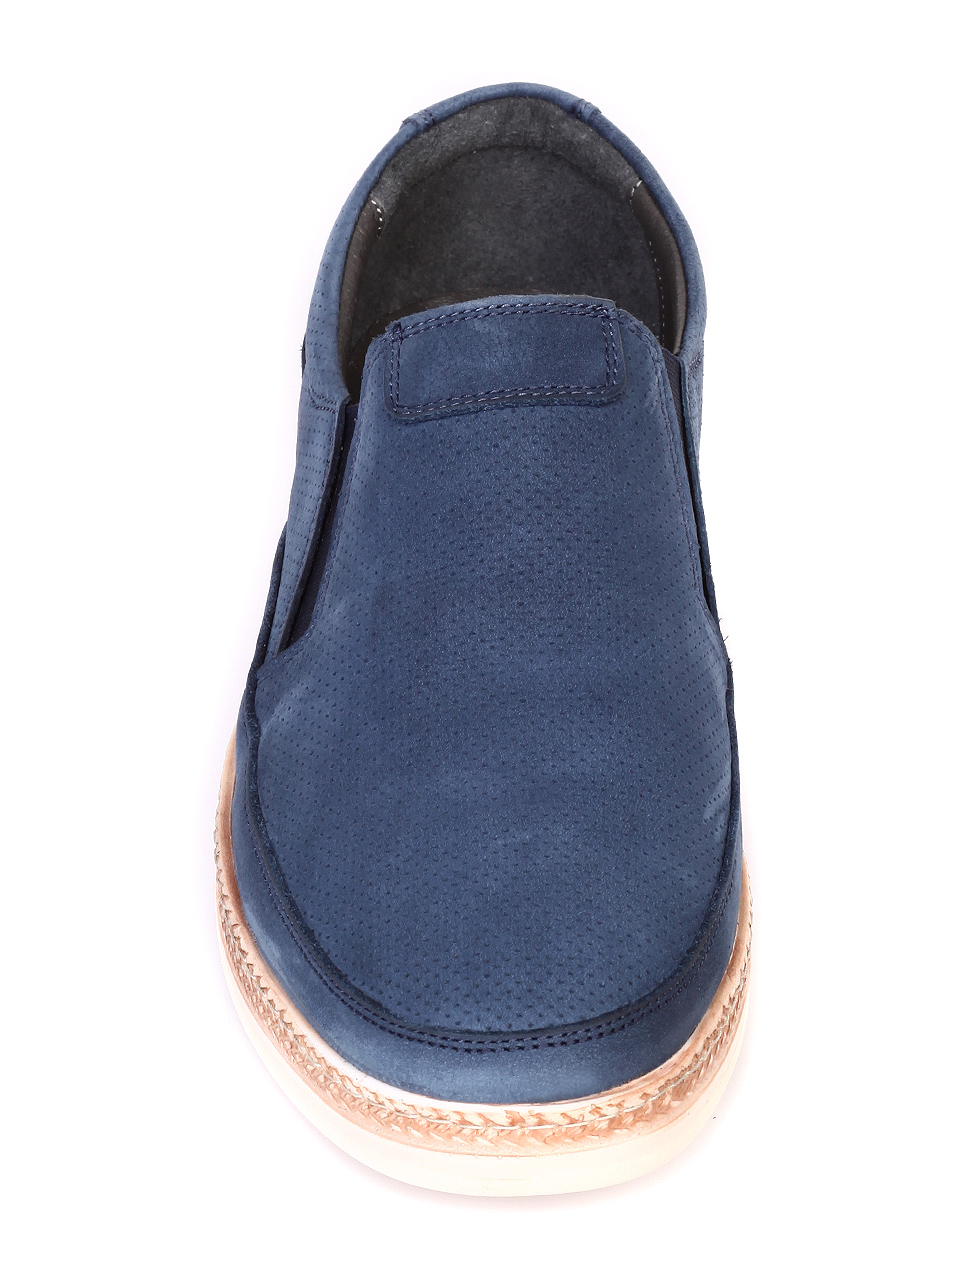 Ежедневни мъжки обувки от естествена кожа 7AT-19446 blue